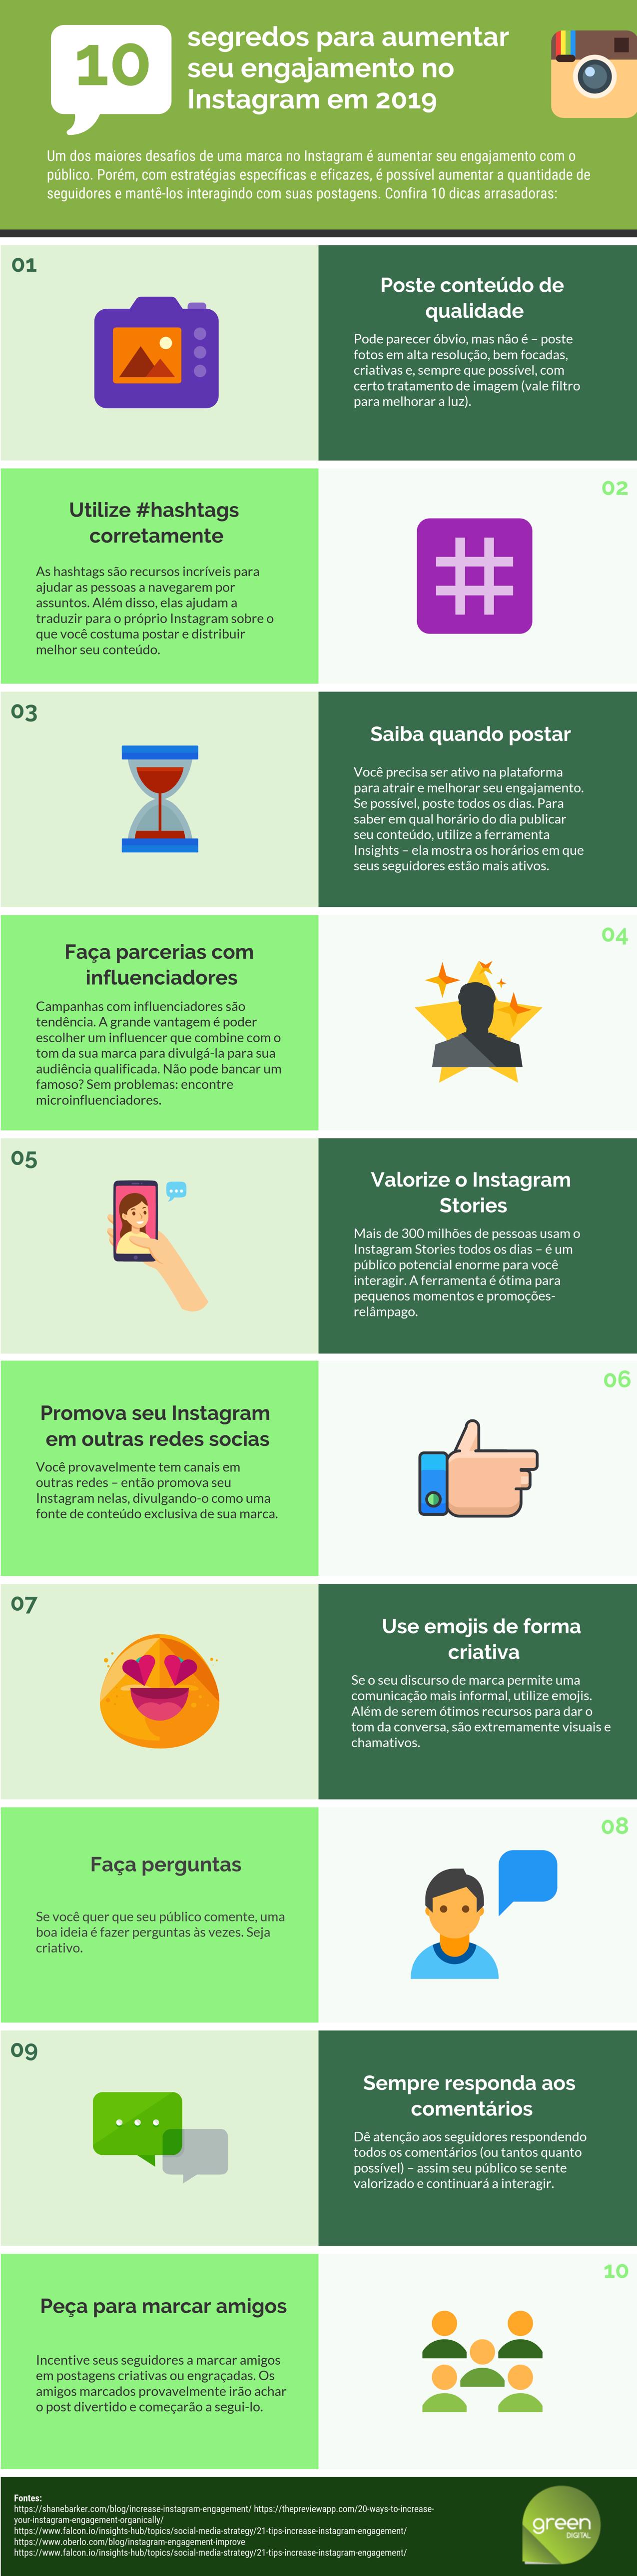 Infográfico: segredos para aumentar seu engajamento no Instagram